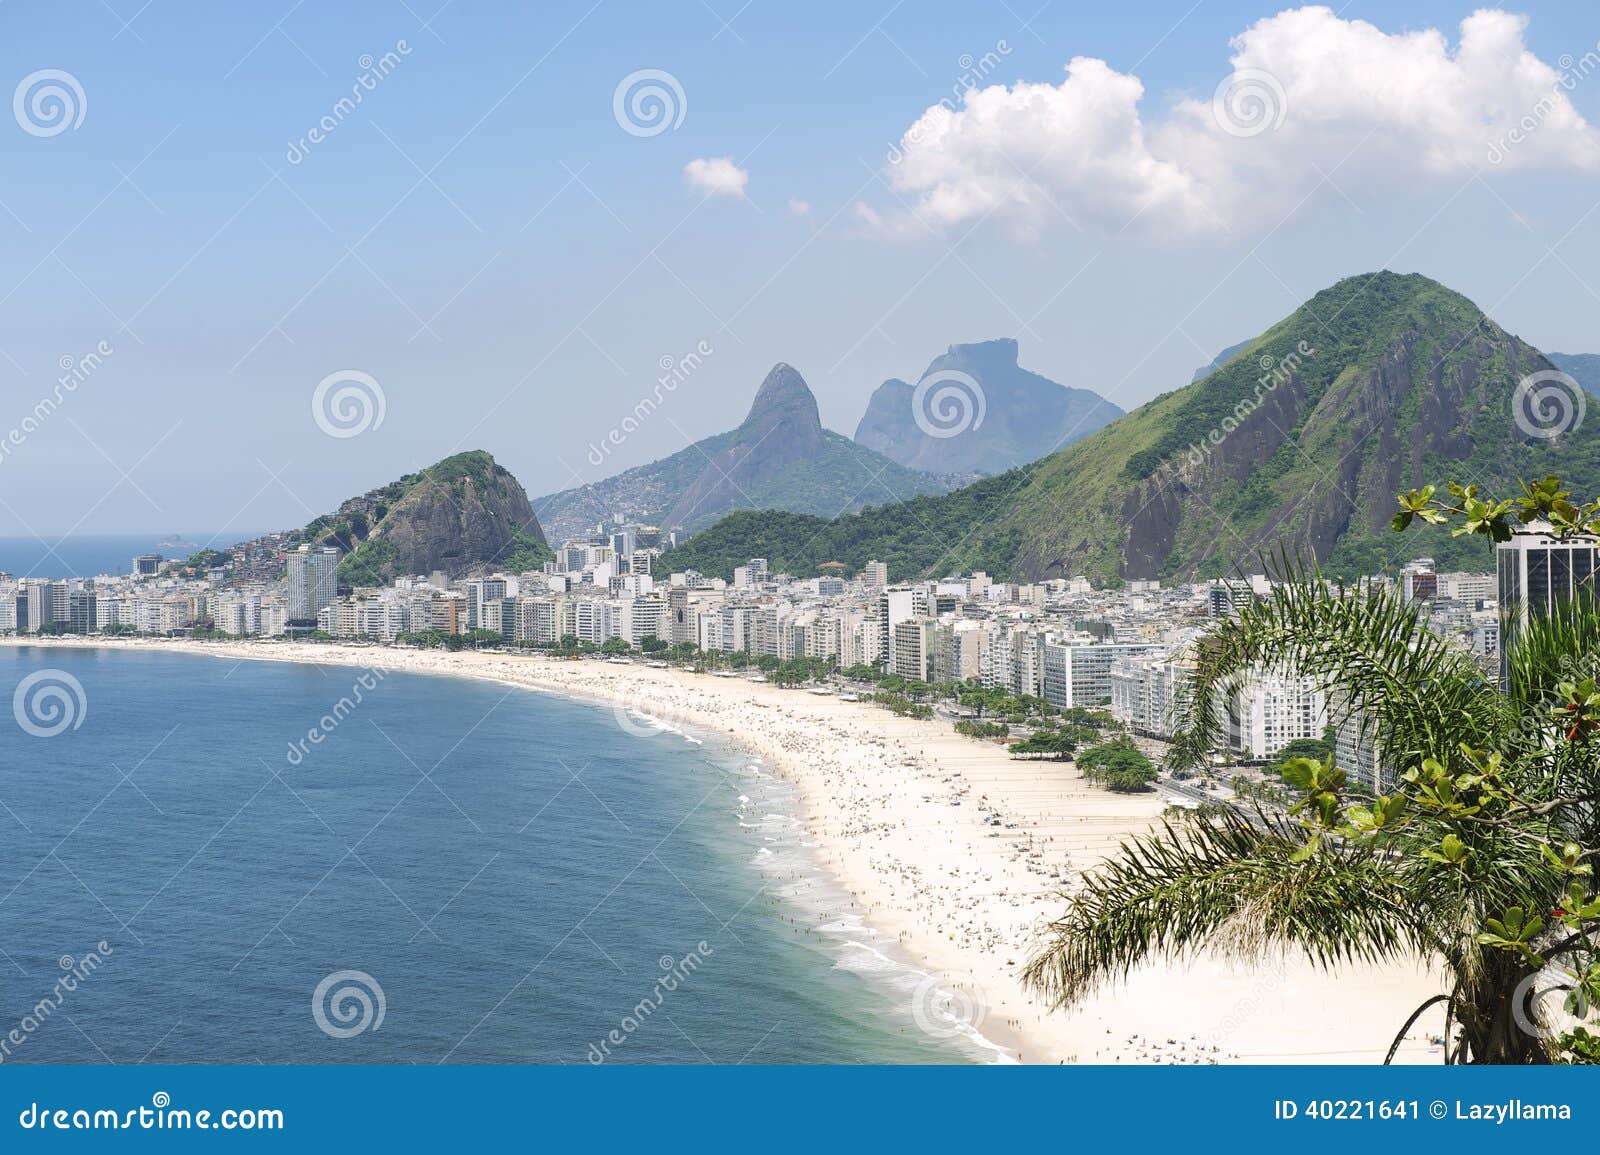 copacabana beach rio de janeiro brazil skyline aerial view